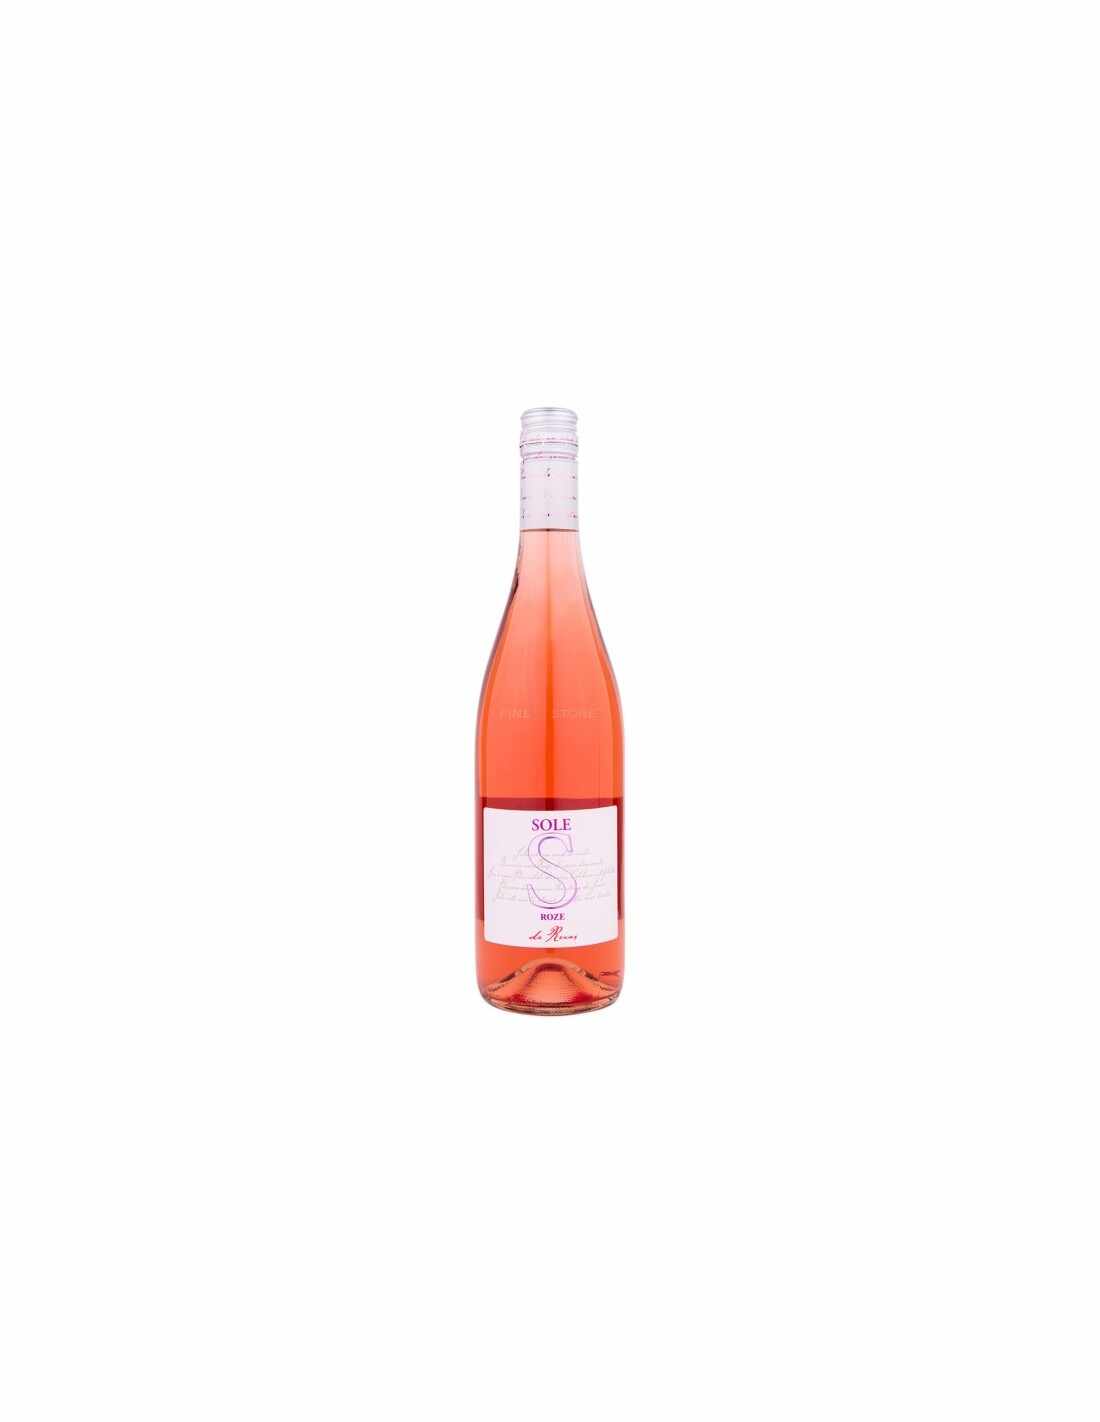 Vin roze sec, Cupaj, Sole Recas, 0.75L, 13.5% alc., Romania